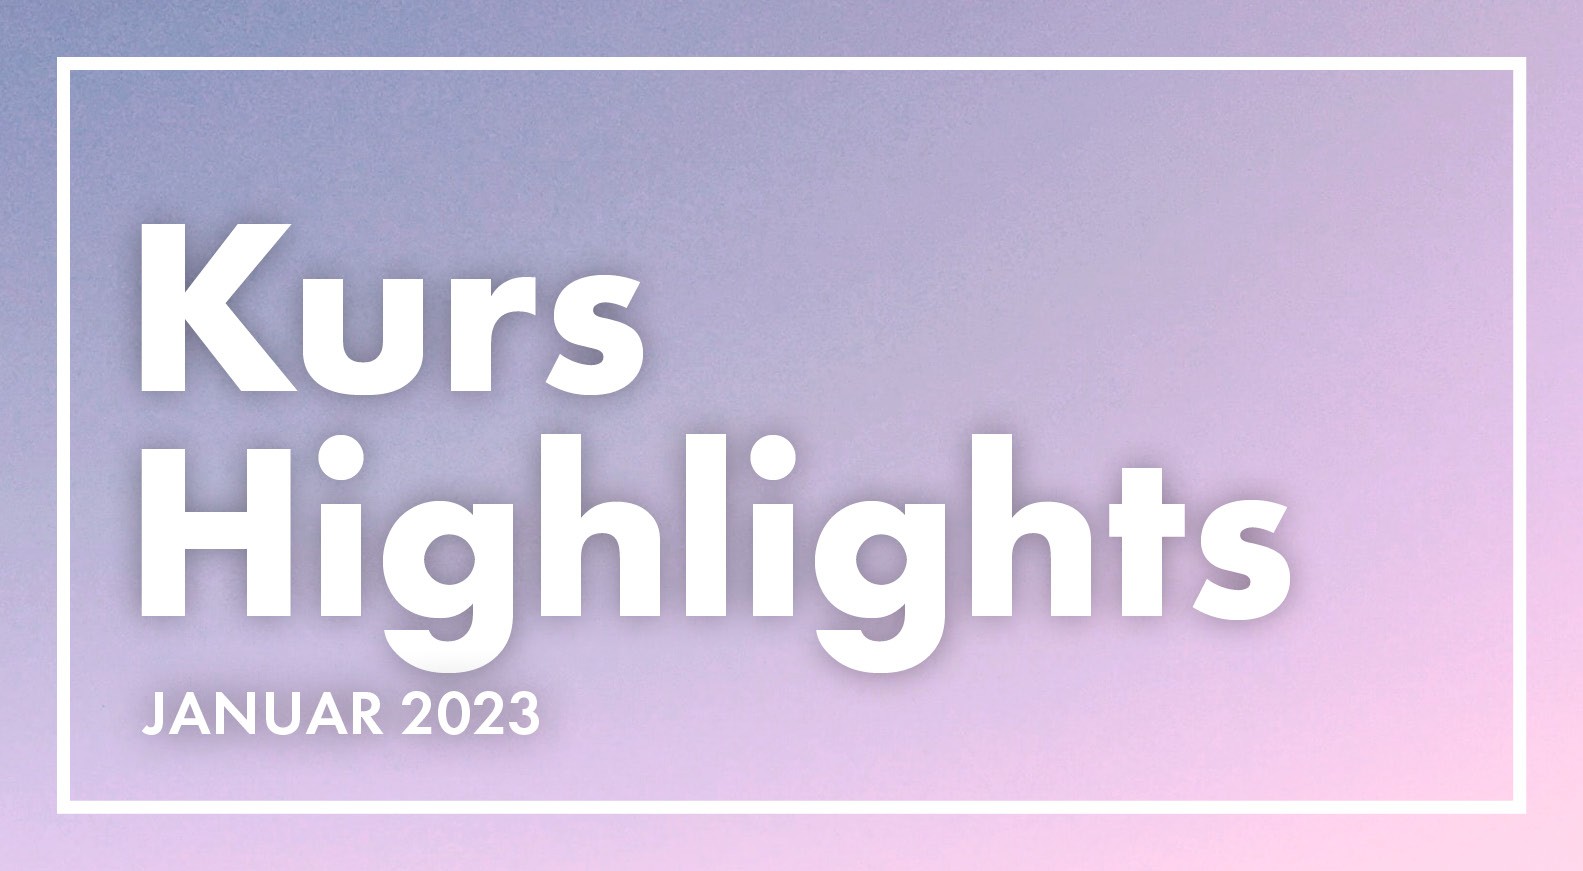 Kurshighlights im Januar 2023